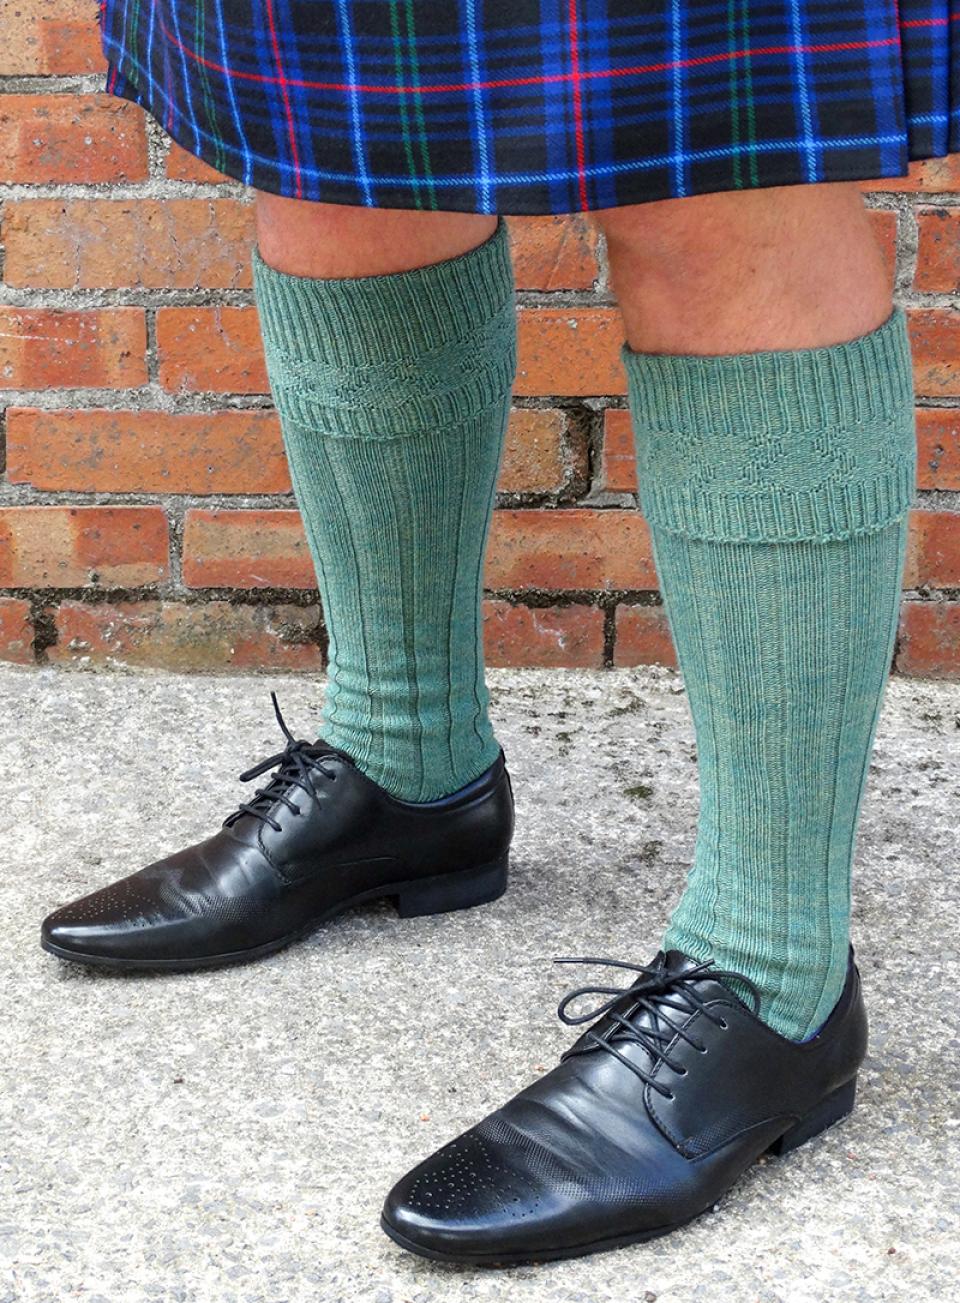 Lovat Green Kilt Hose (Socks)